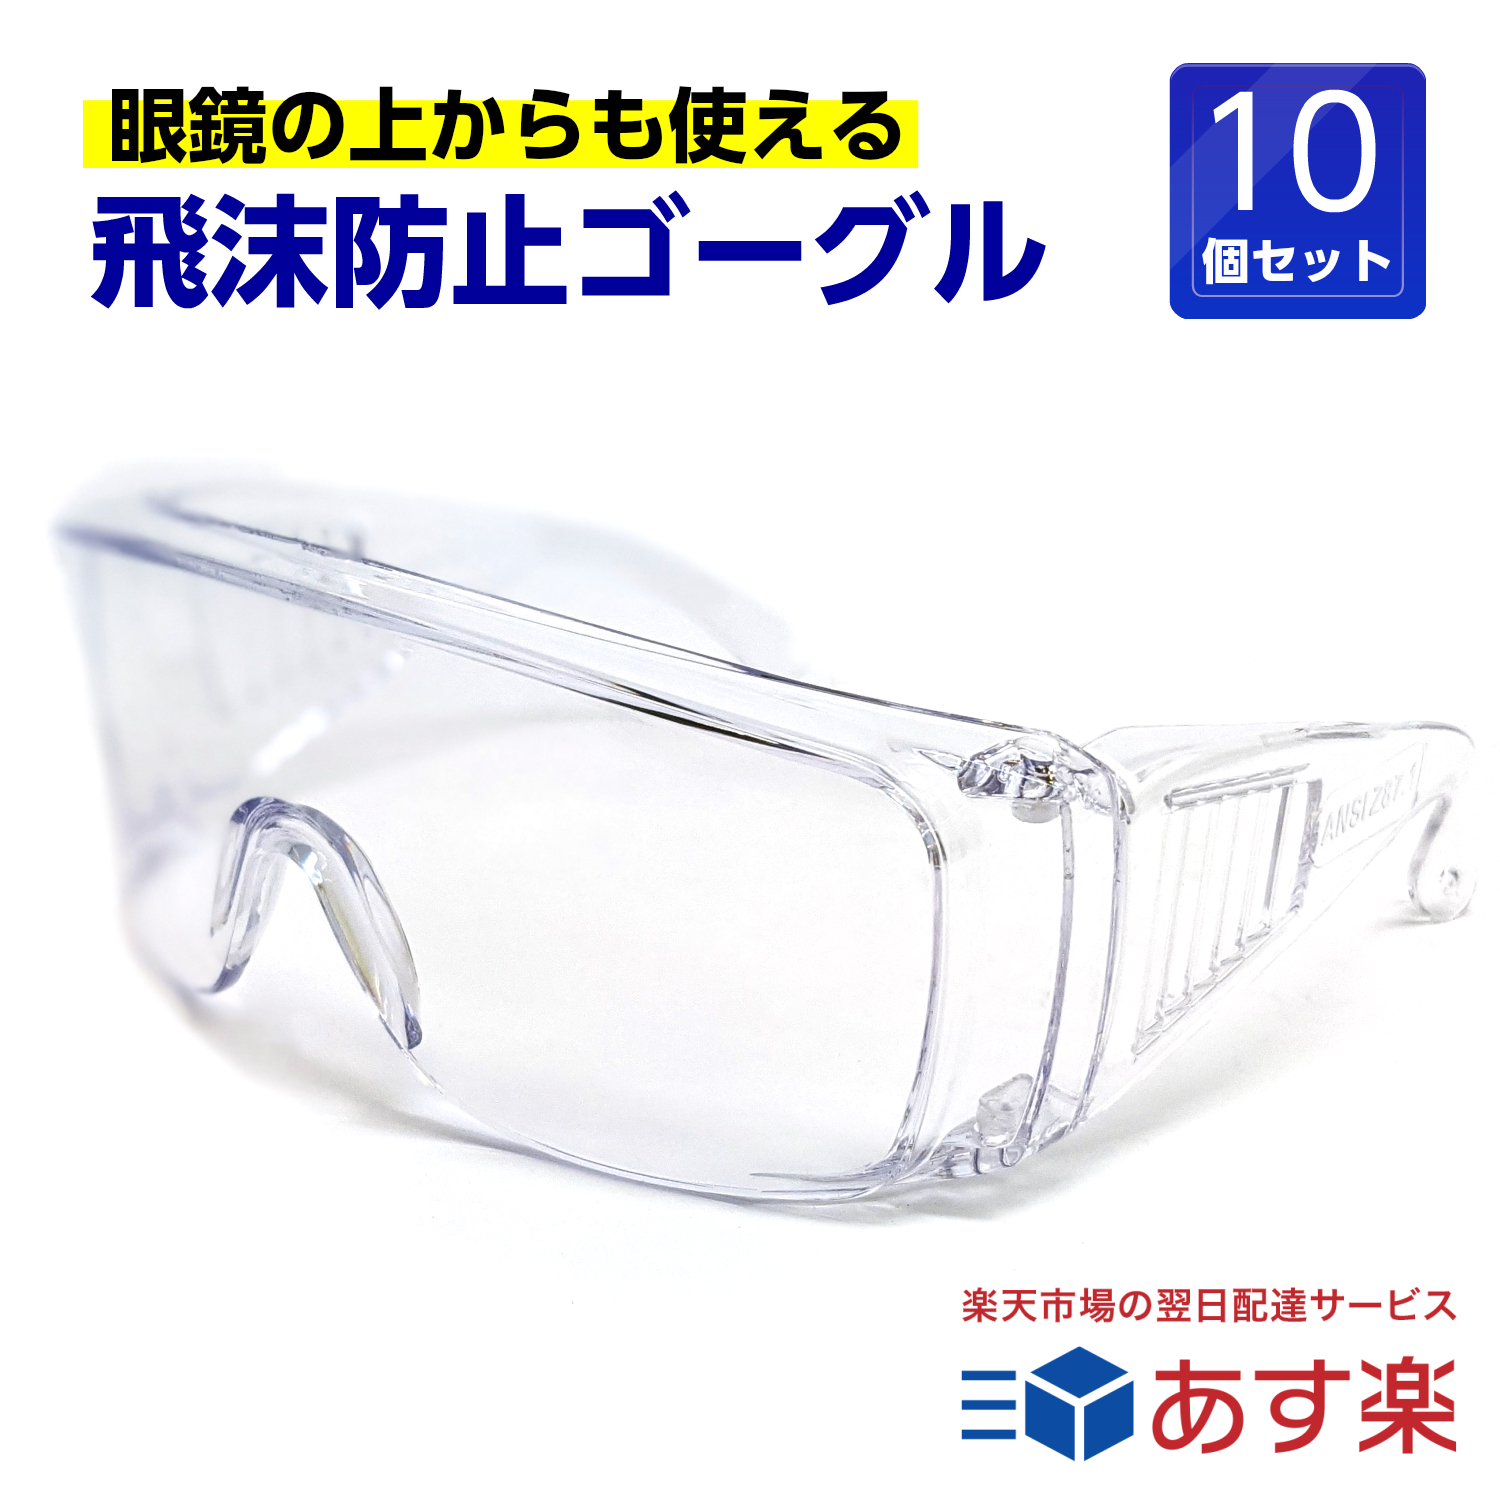 メガネ対応 オーバーグラス 保護 予防 衛生 医療用 保安担当 くもらない 全品ポイント5倍 直輸入品激安 tkh 眼鏡の上から使えます 介護 セフティグラス 豪華な 10個セット 保護メガネ 飛沫防止 rsl 医療現場用